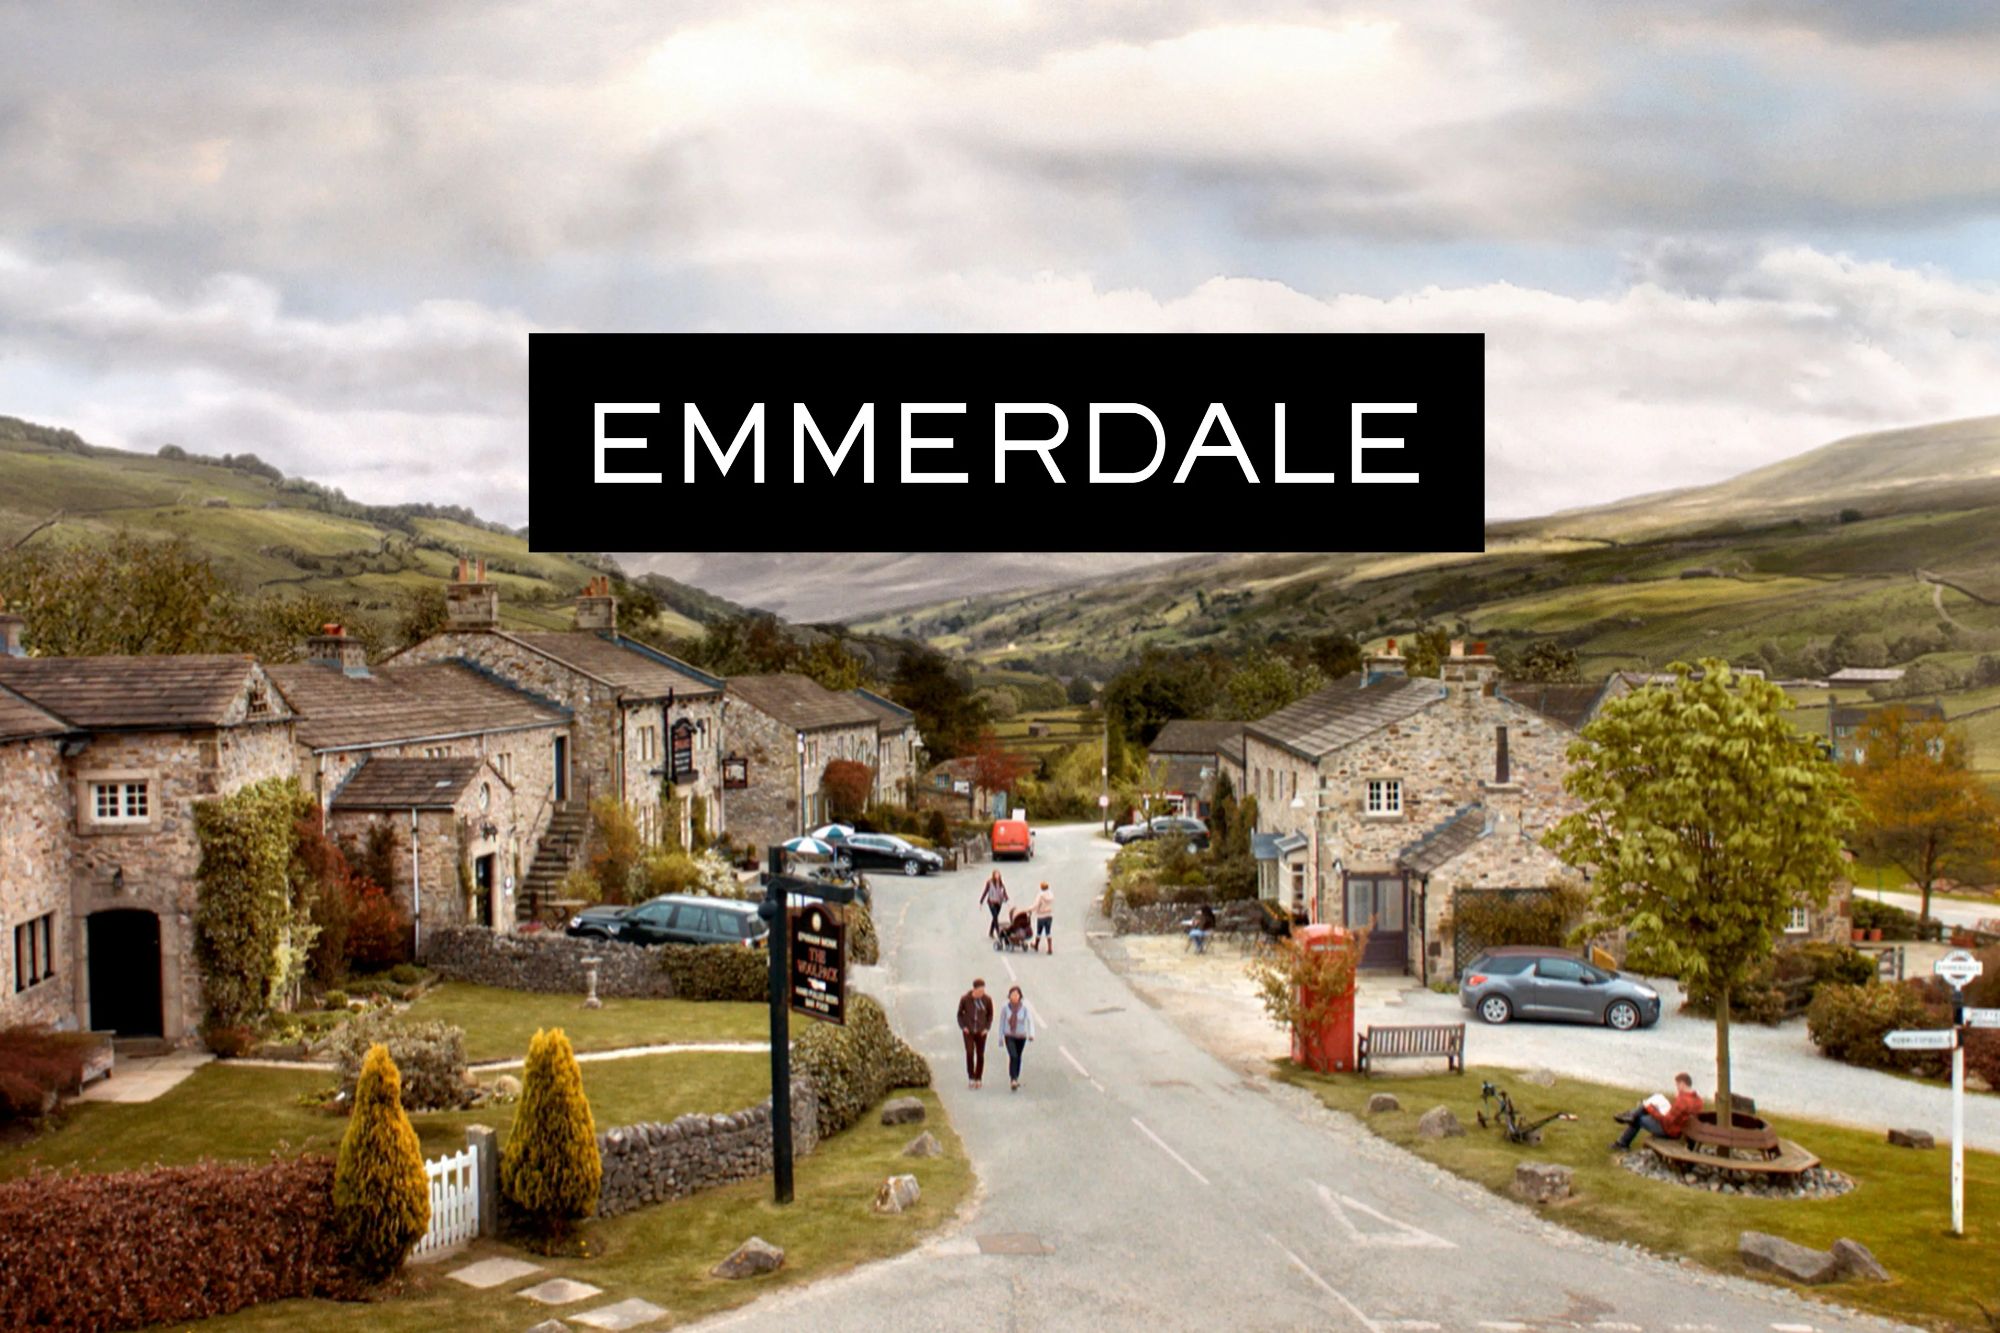 Emmerdale couple split in heartbreaking scenes as love triangle exposed